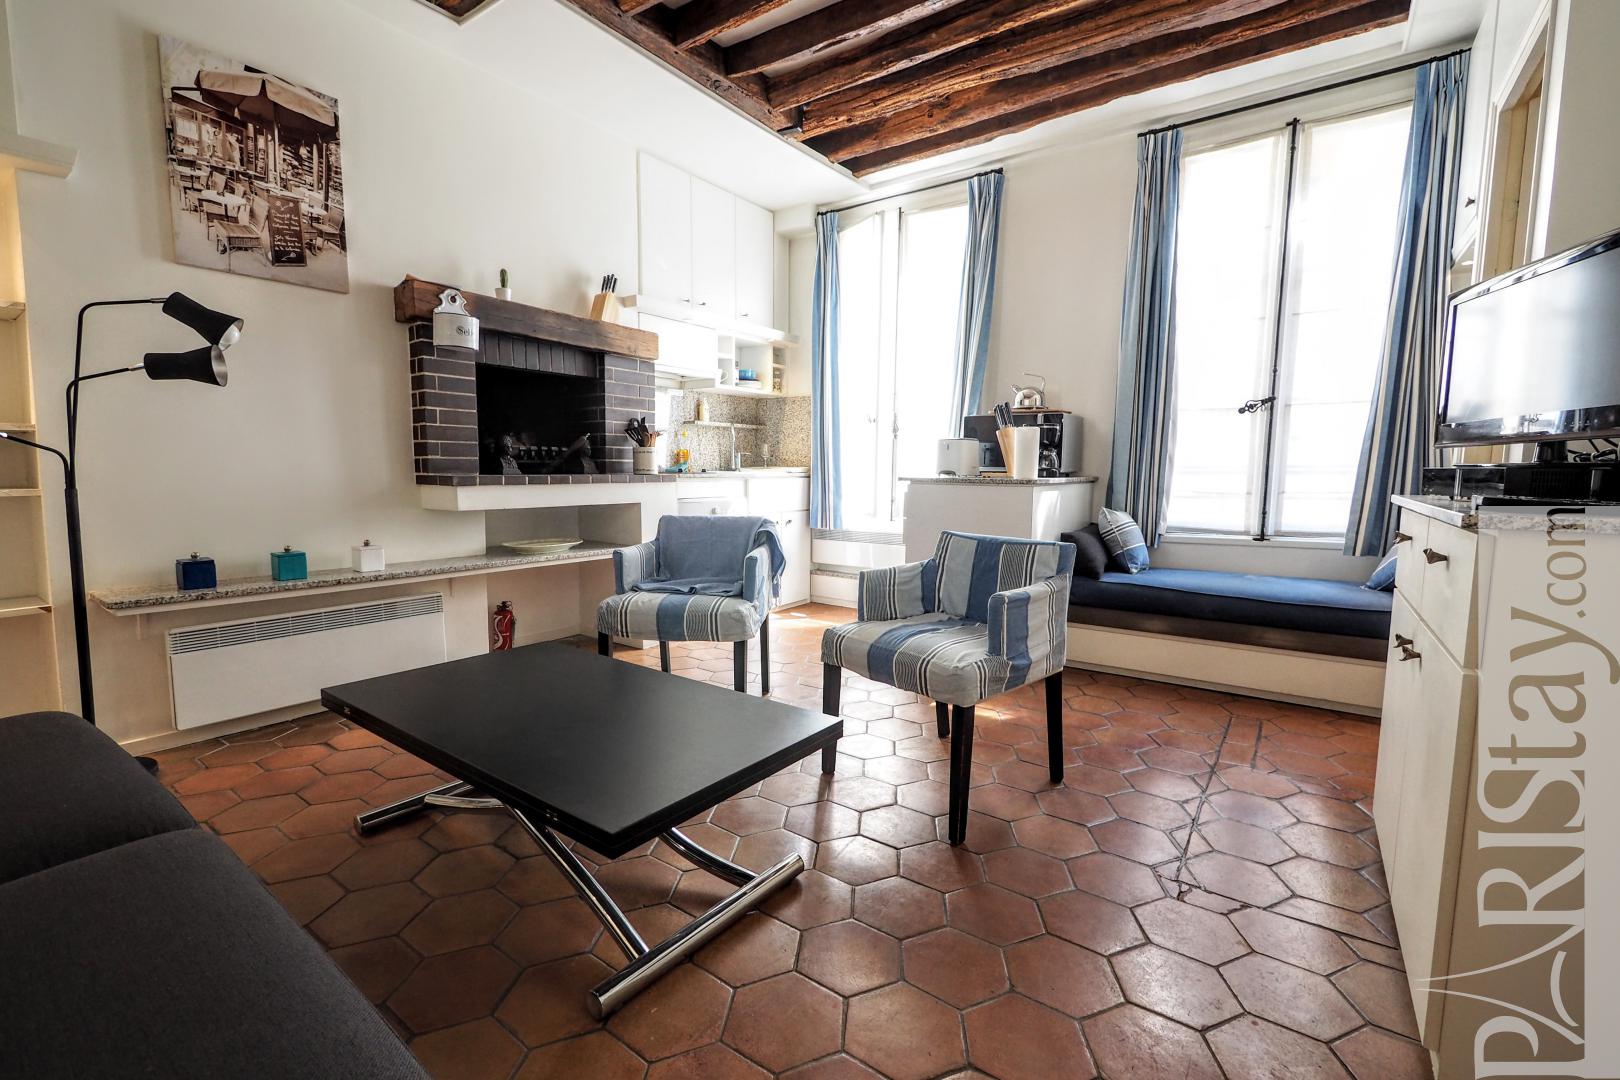 Apartment for rent paris france, furnished studio rental, Notre Dame